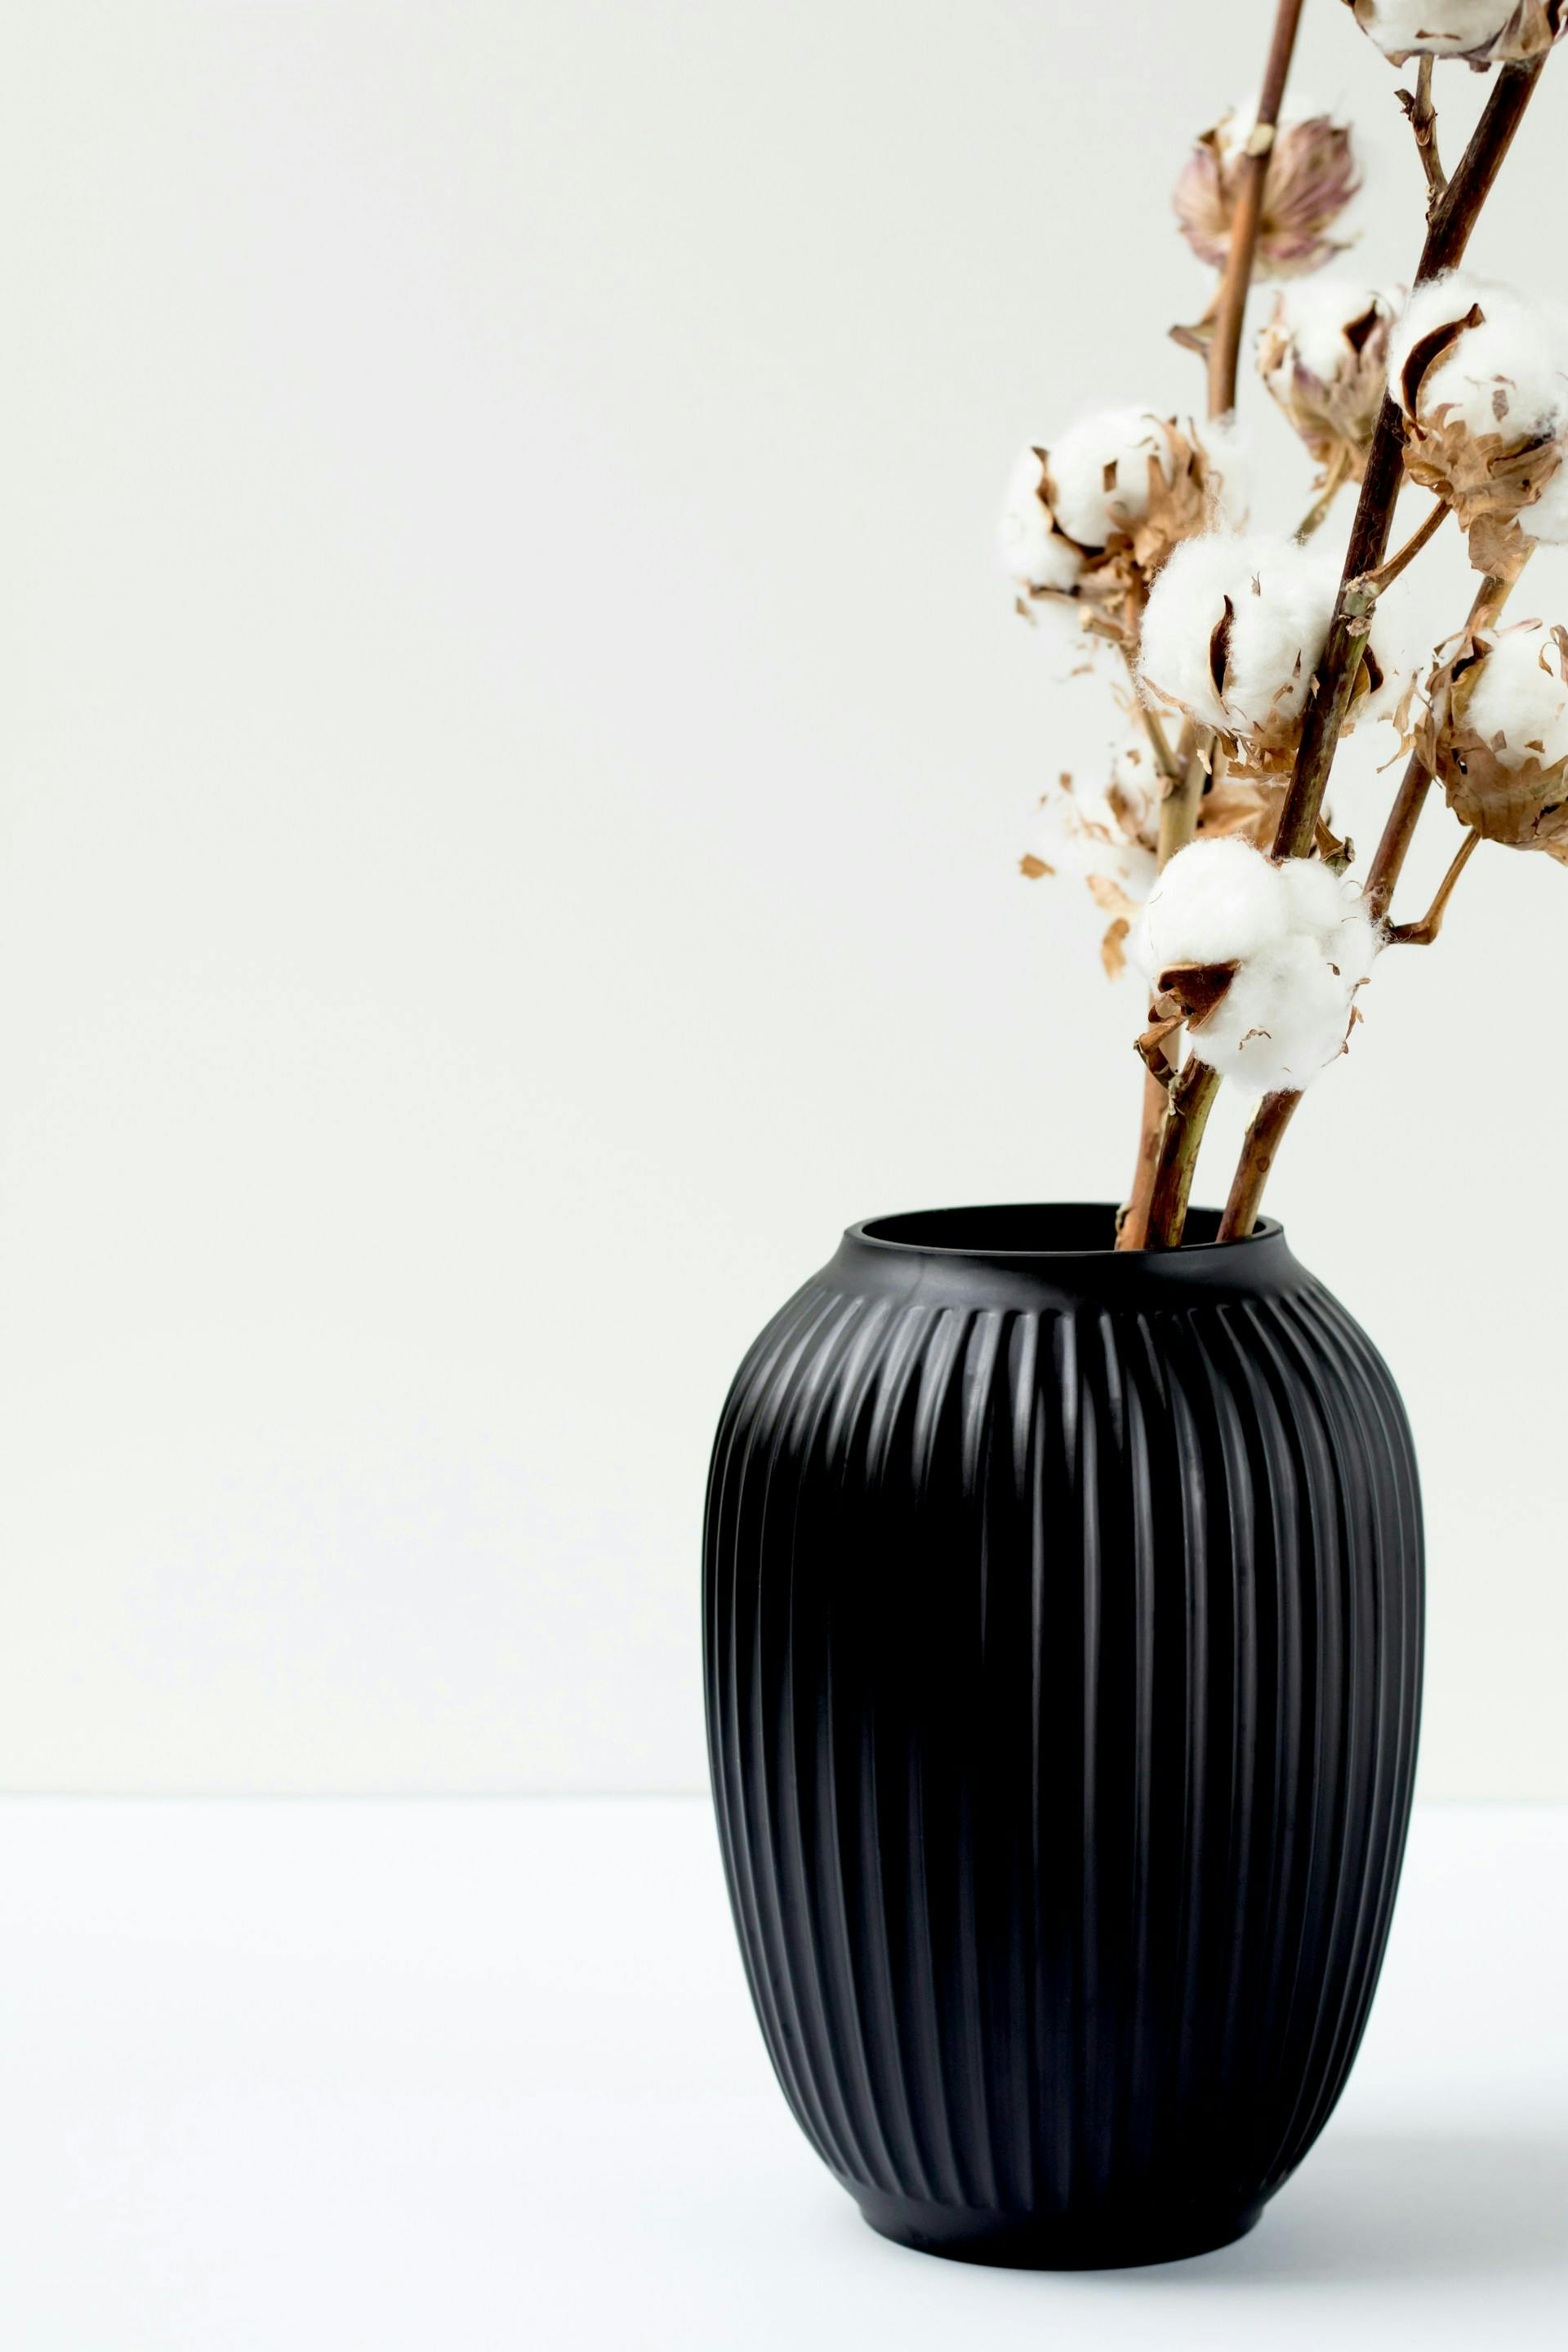 Schwarze Vase mit Baumwollblume auf weißem Hintergrund